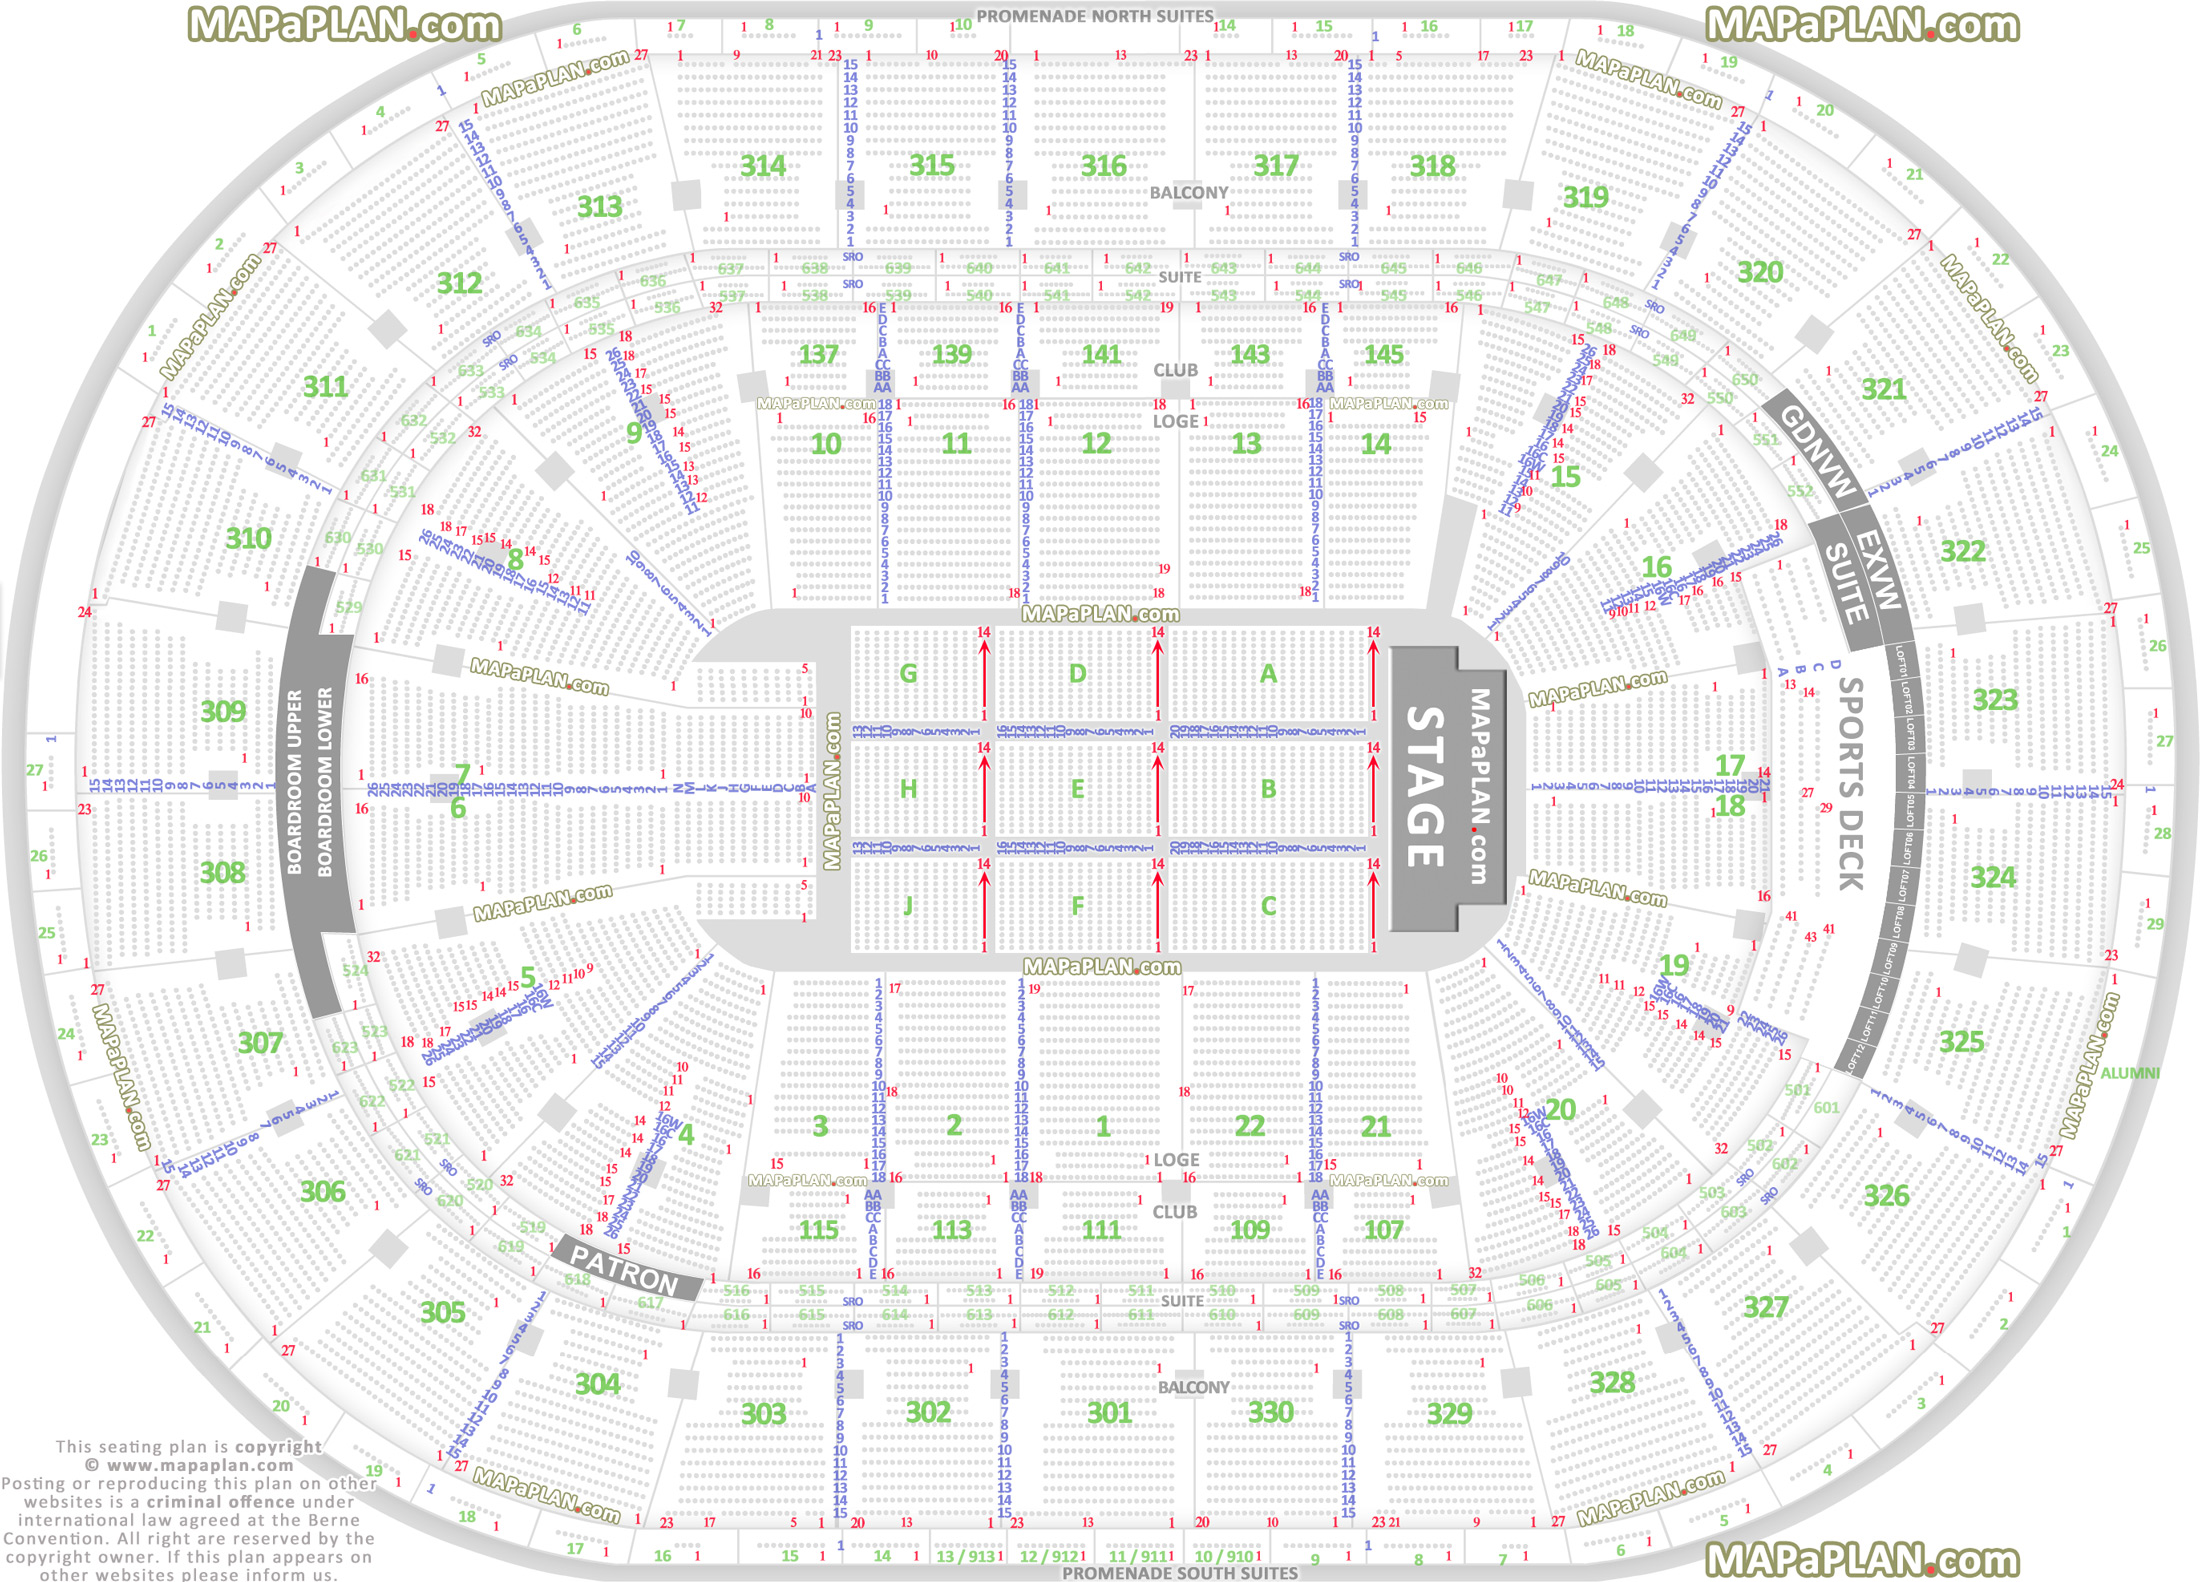 Boston TD Garden seat numbers detailed seating plan ...